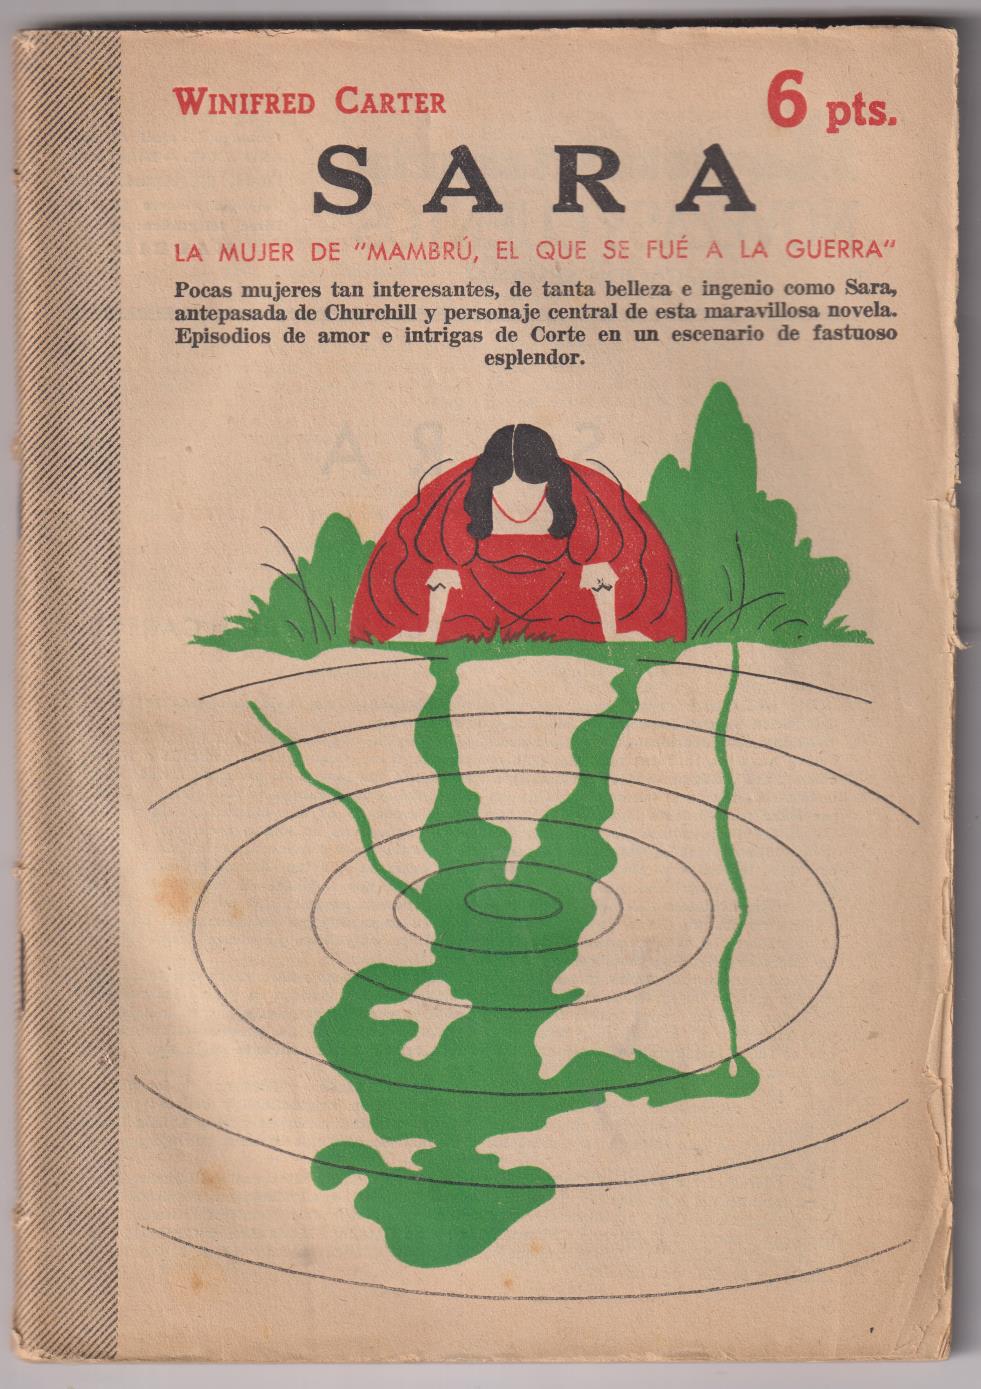 Revista Literaria Novelas y Cuentos nº 1195. Sara por Winifred Carter, Año 1954